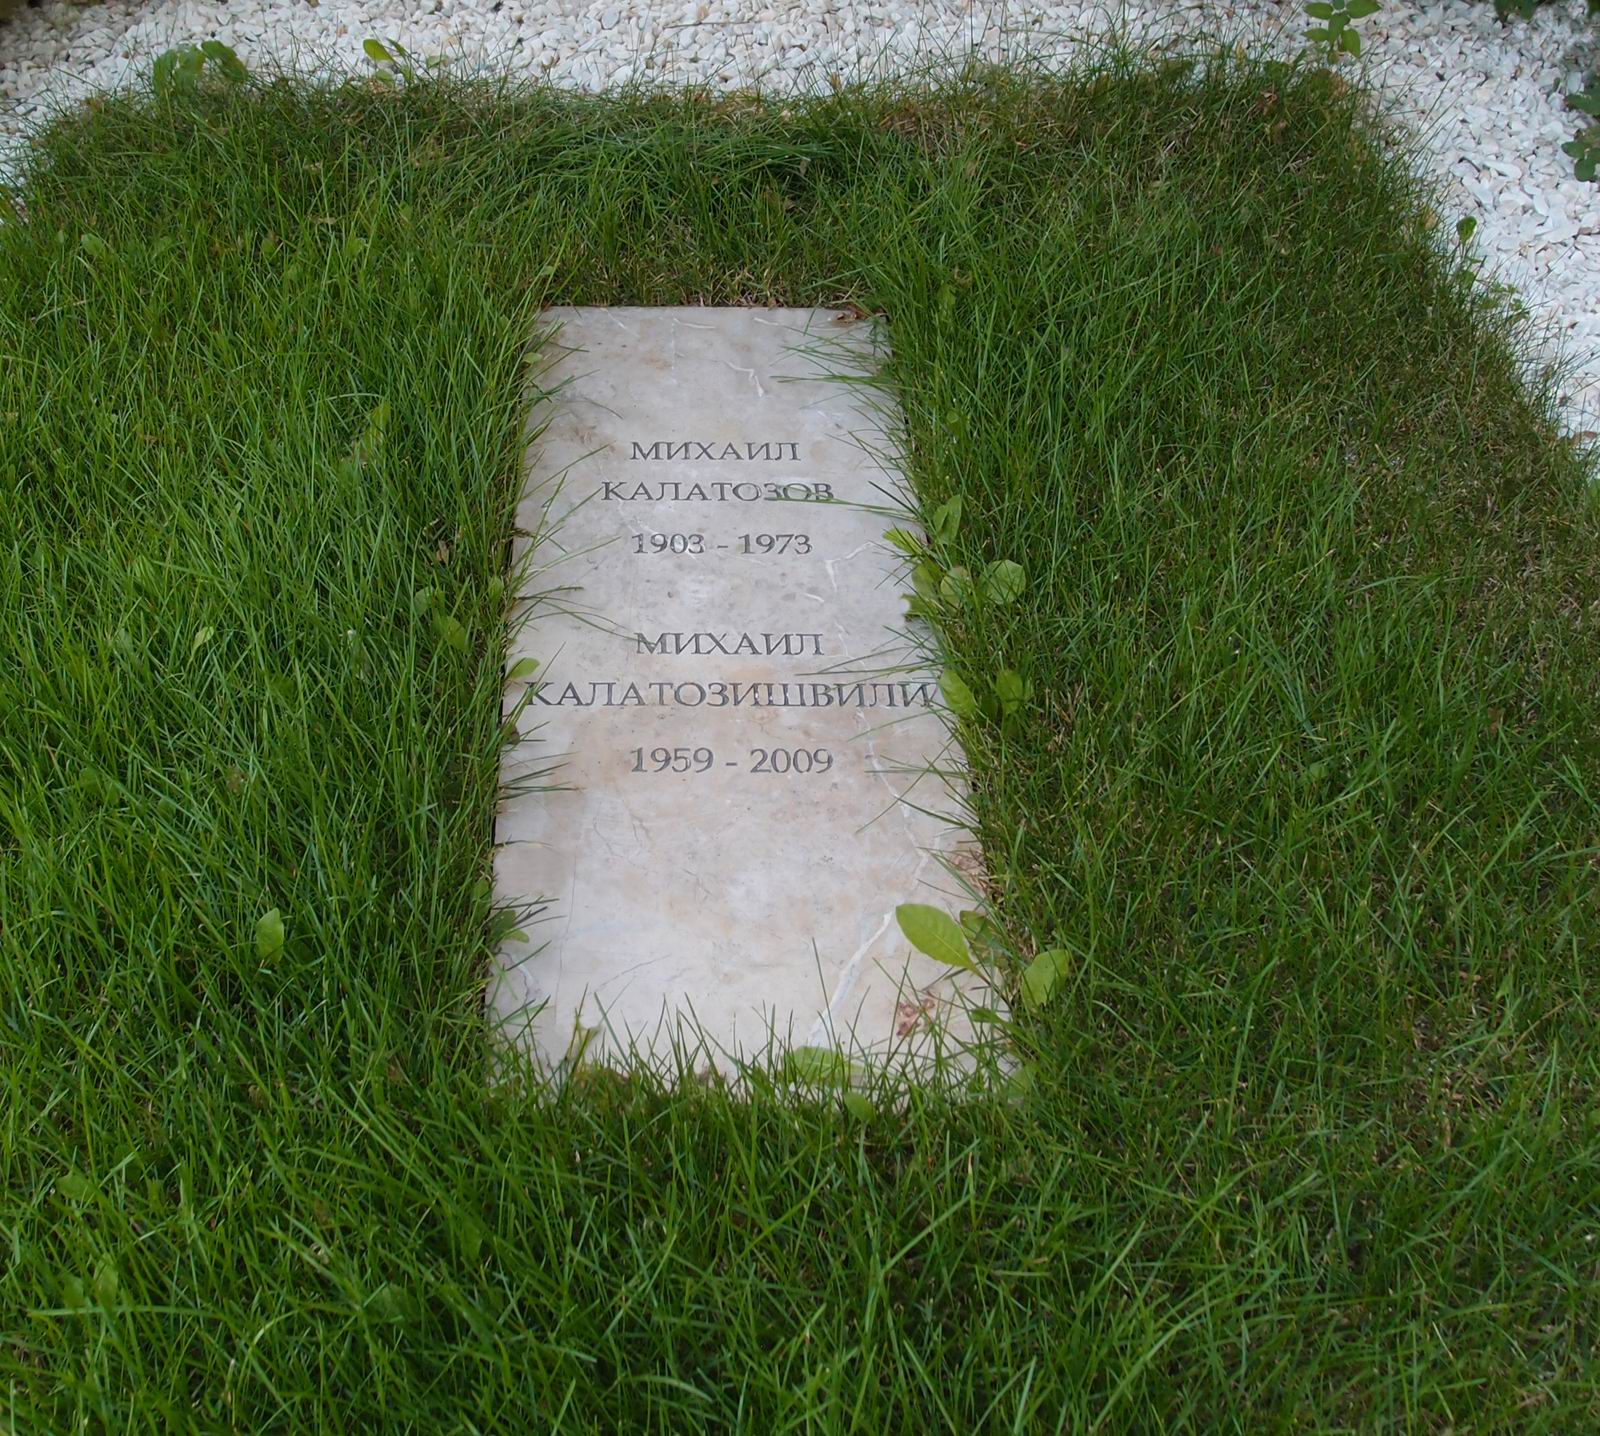 Памятник на могиле Калатозова М.К. (1903-1973), на Новодевичьем кладбище (7-5-24). Нажмите левую кнопку мыши чтобы увидеть вариант до 2009.